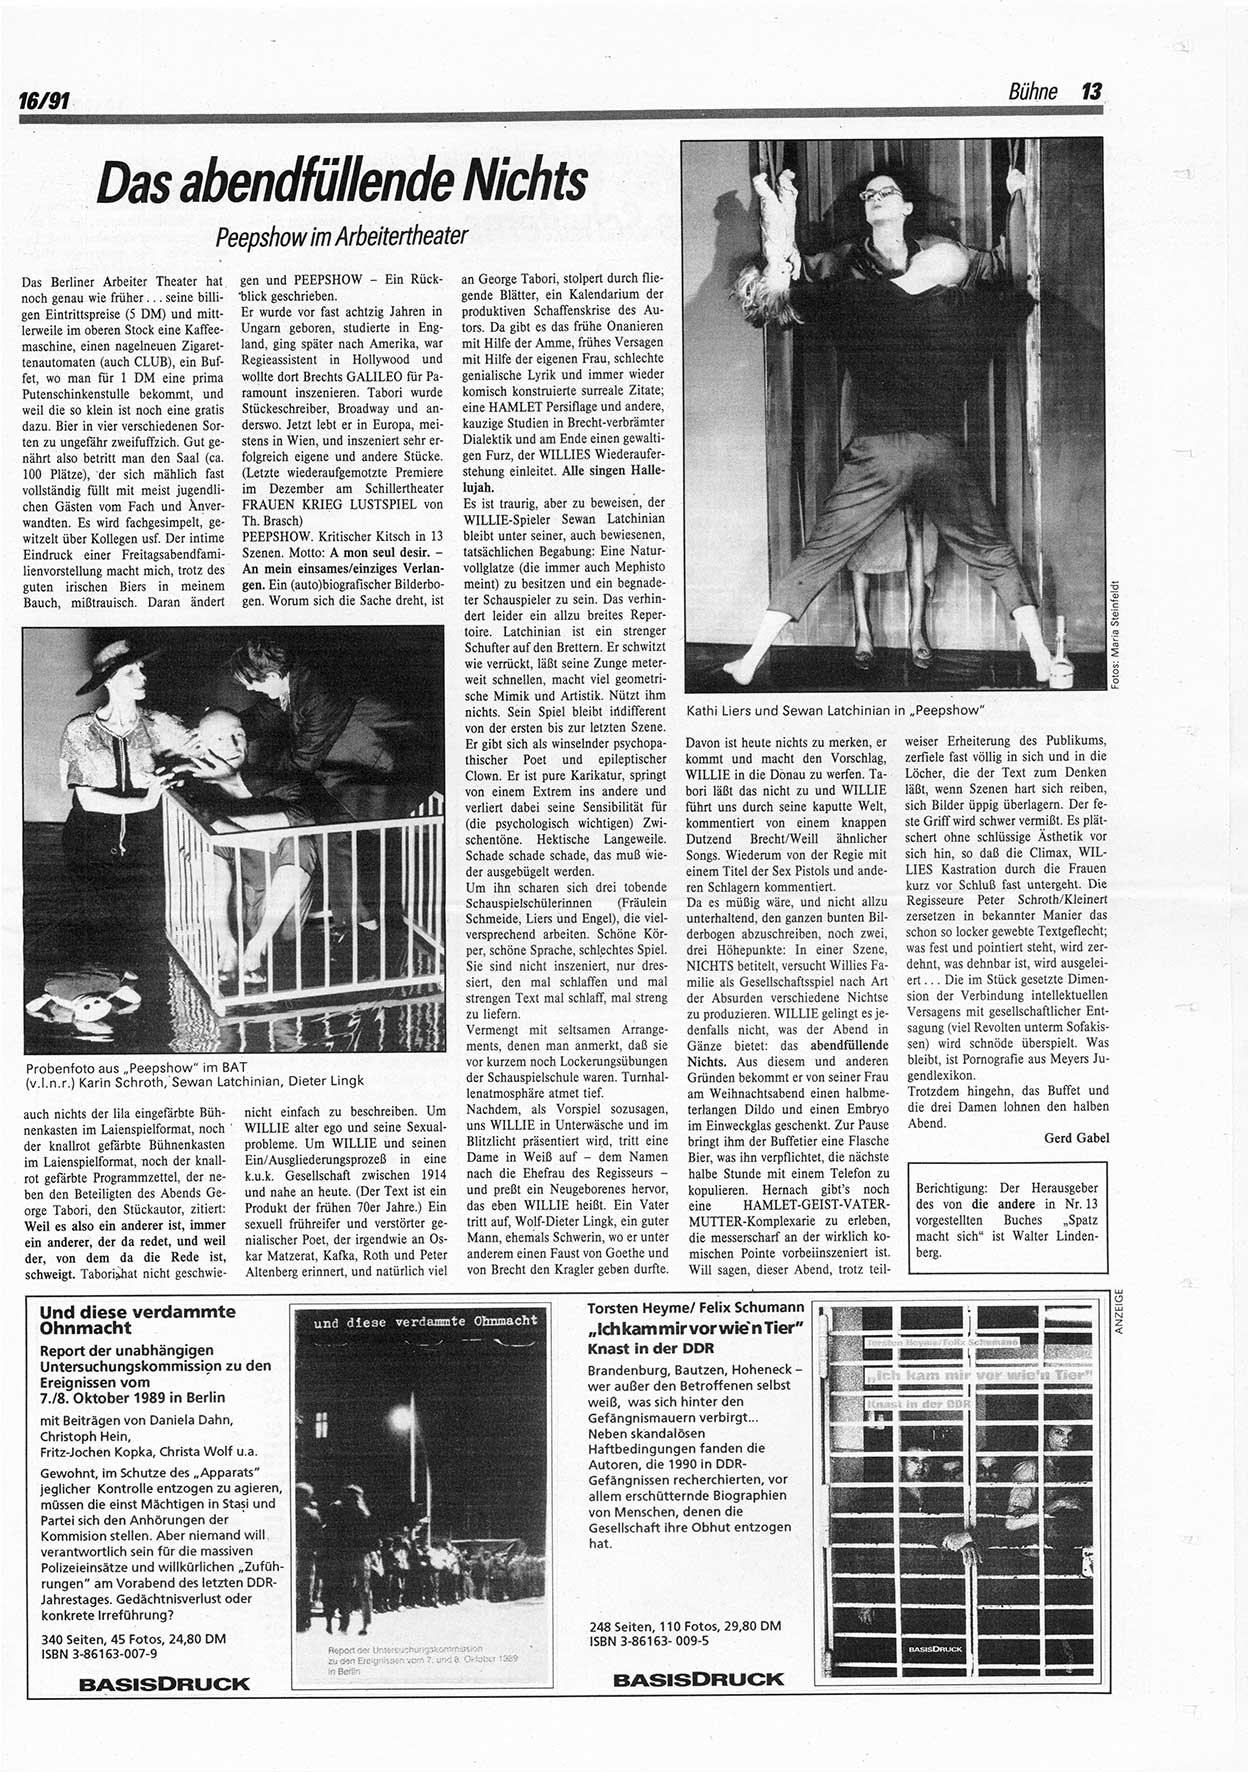 Die Andere, Unabhängige Wochenzeitung für Politik, Kultur und Kunst, Ausgabe 16 vom 17.4.1991, Seite 13 (And. W.-Zg. Ausg. 16 1991, S. 13)